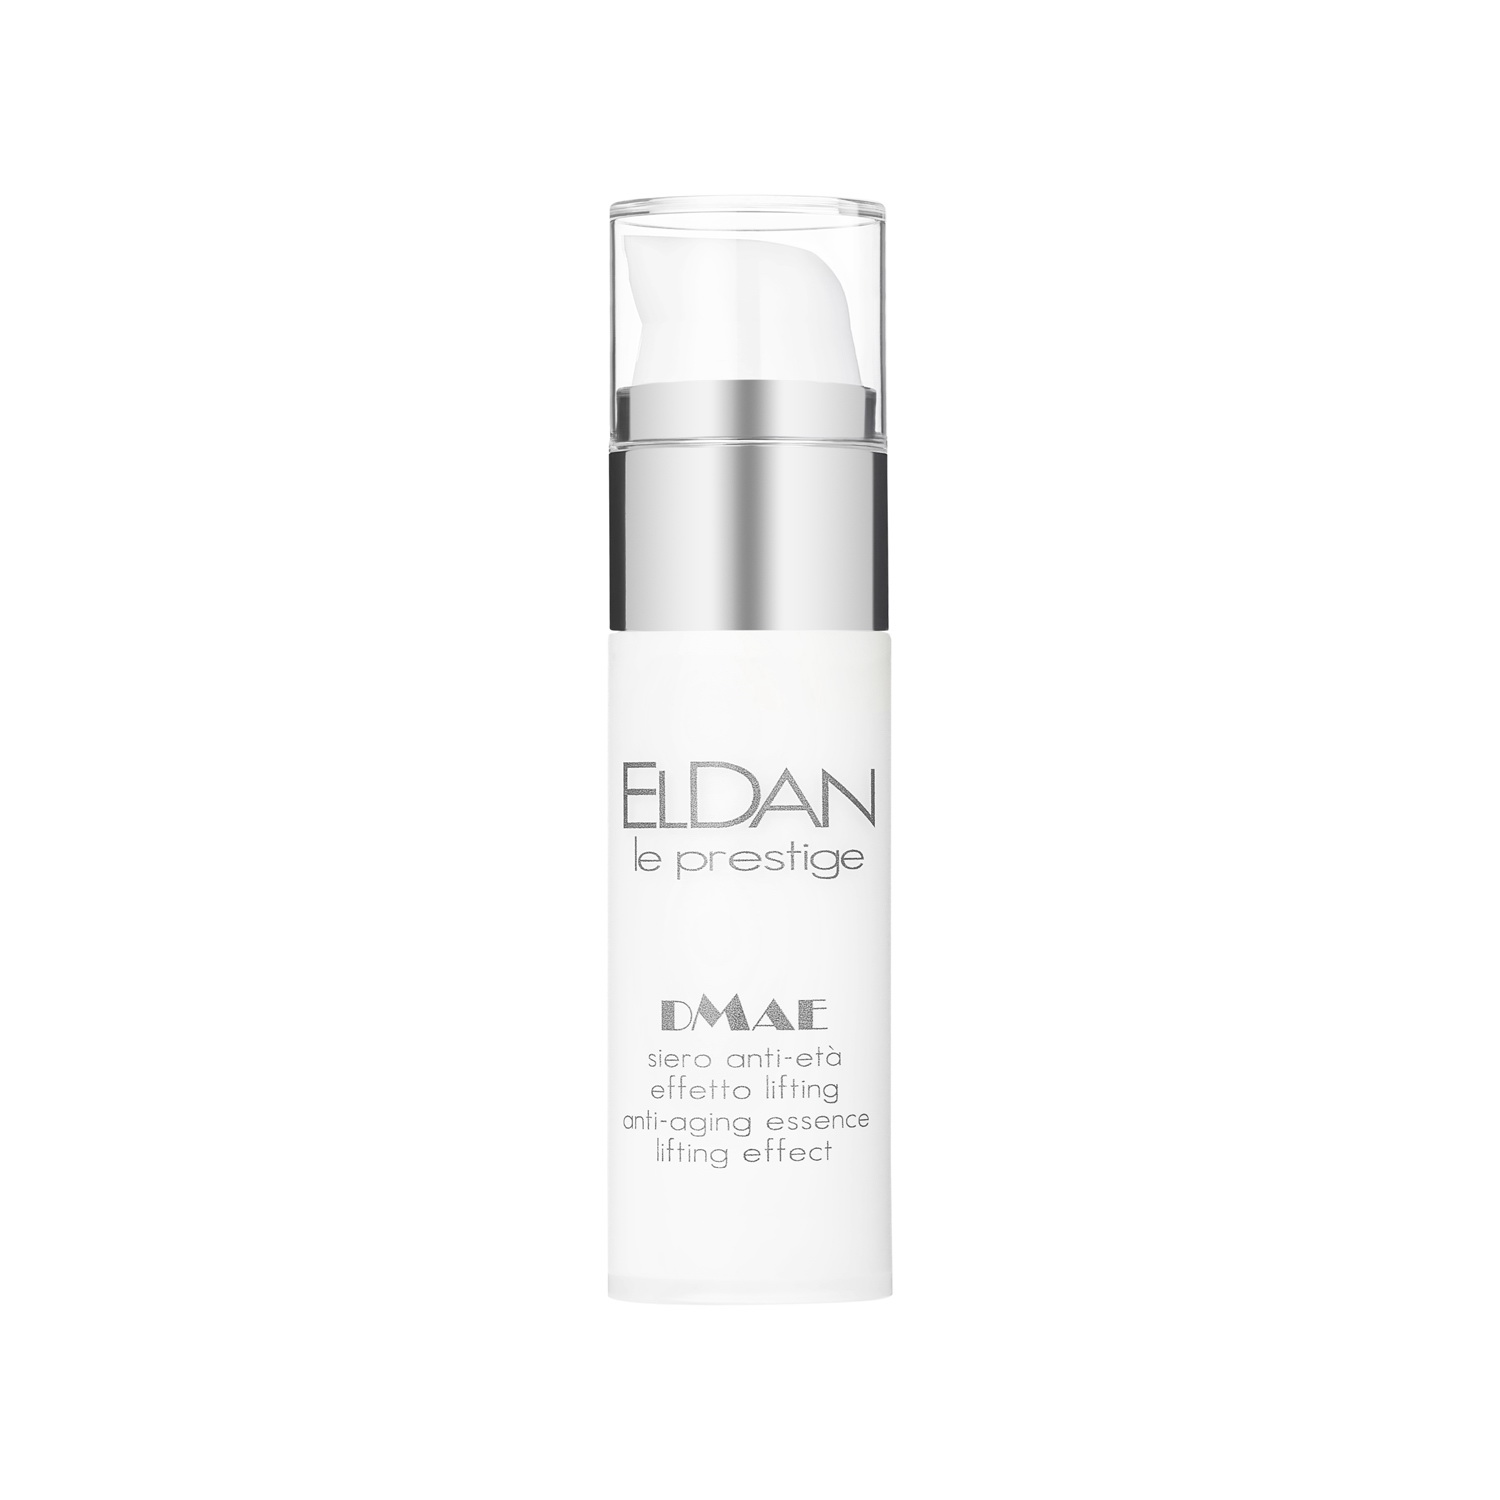 Сыворотка для лица Eldan Cosmetics DMAE Anti-Aging Essence Lifting Effect, 30 мл inspira cosmetics сыворотка интенсивного лифтинга в магических сферах 30 мл